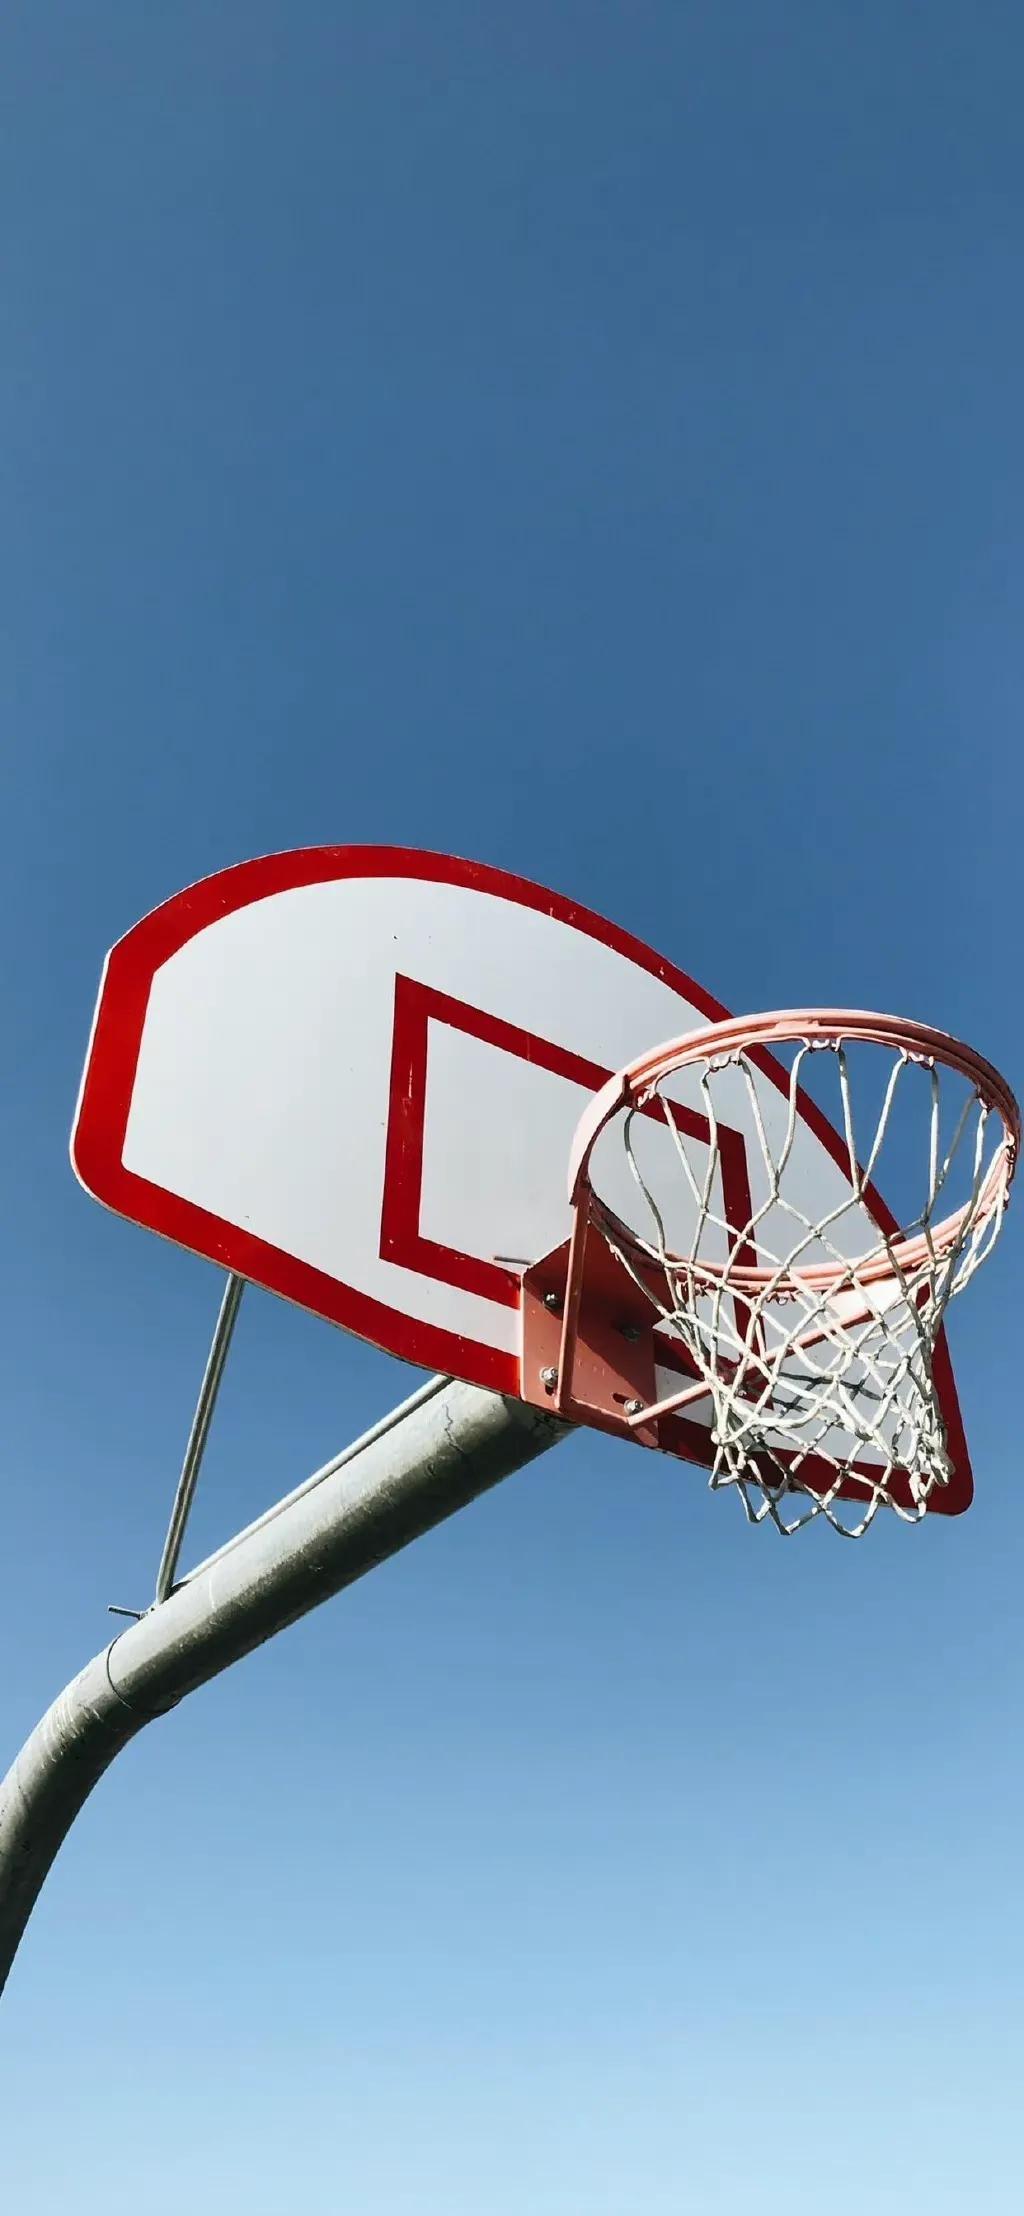 关于篮球的图片加文字(篮球壁纸第七期,精美篮球主题壁纸,总有一张你